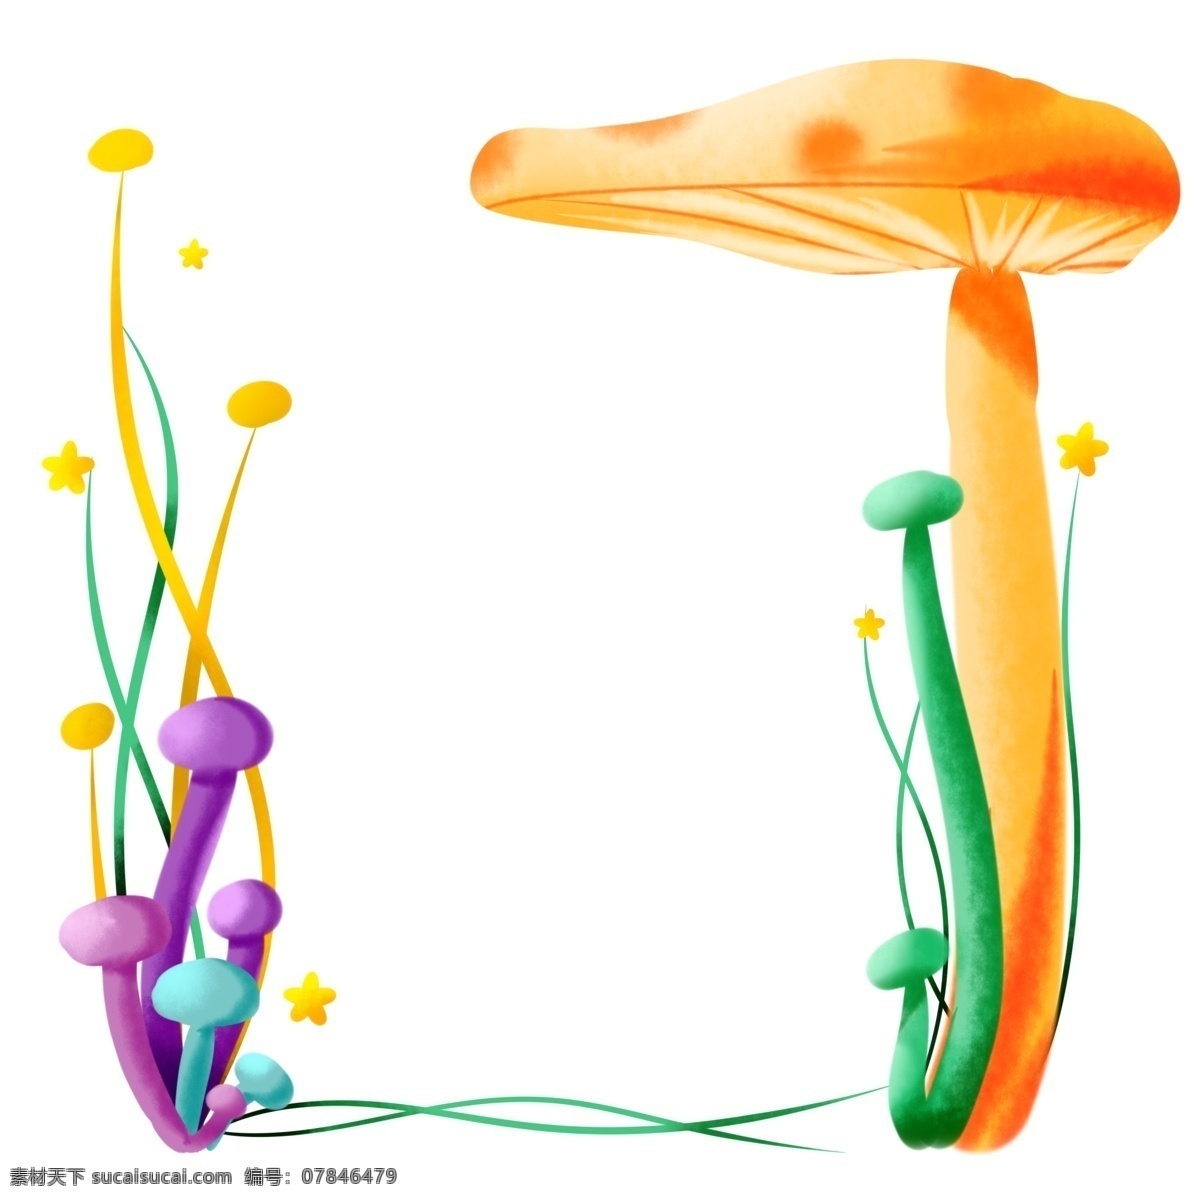 商用 手绘 插画 植物 边框 蘑菇 可爱 小 清新 小清新 童话 植物边框 海报素材 元素